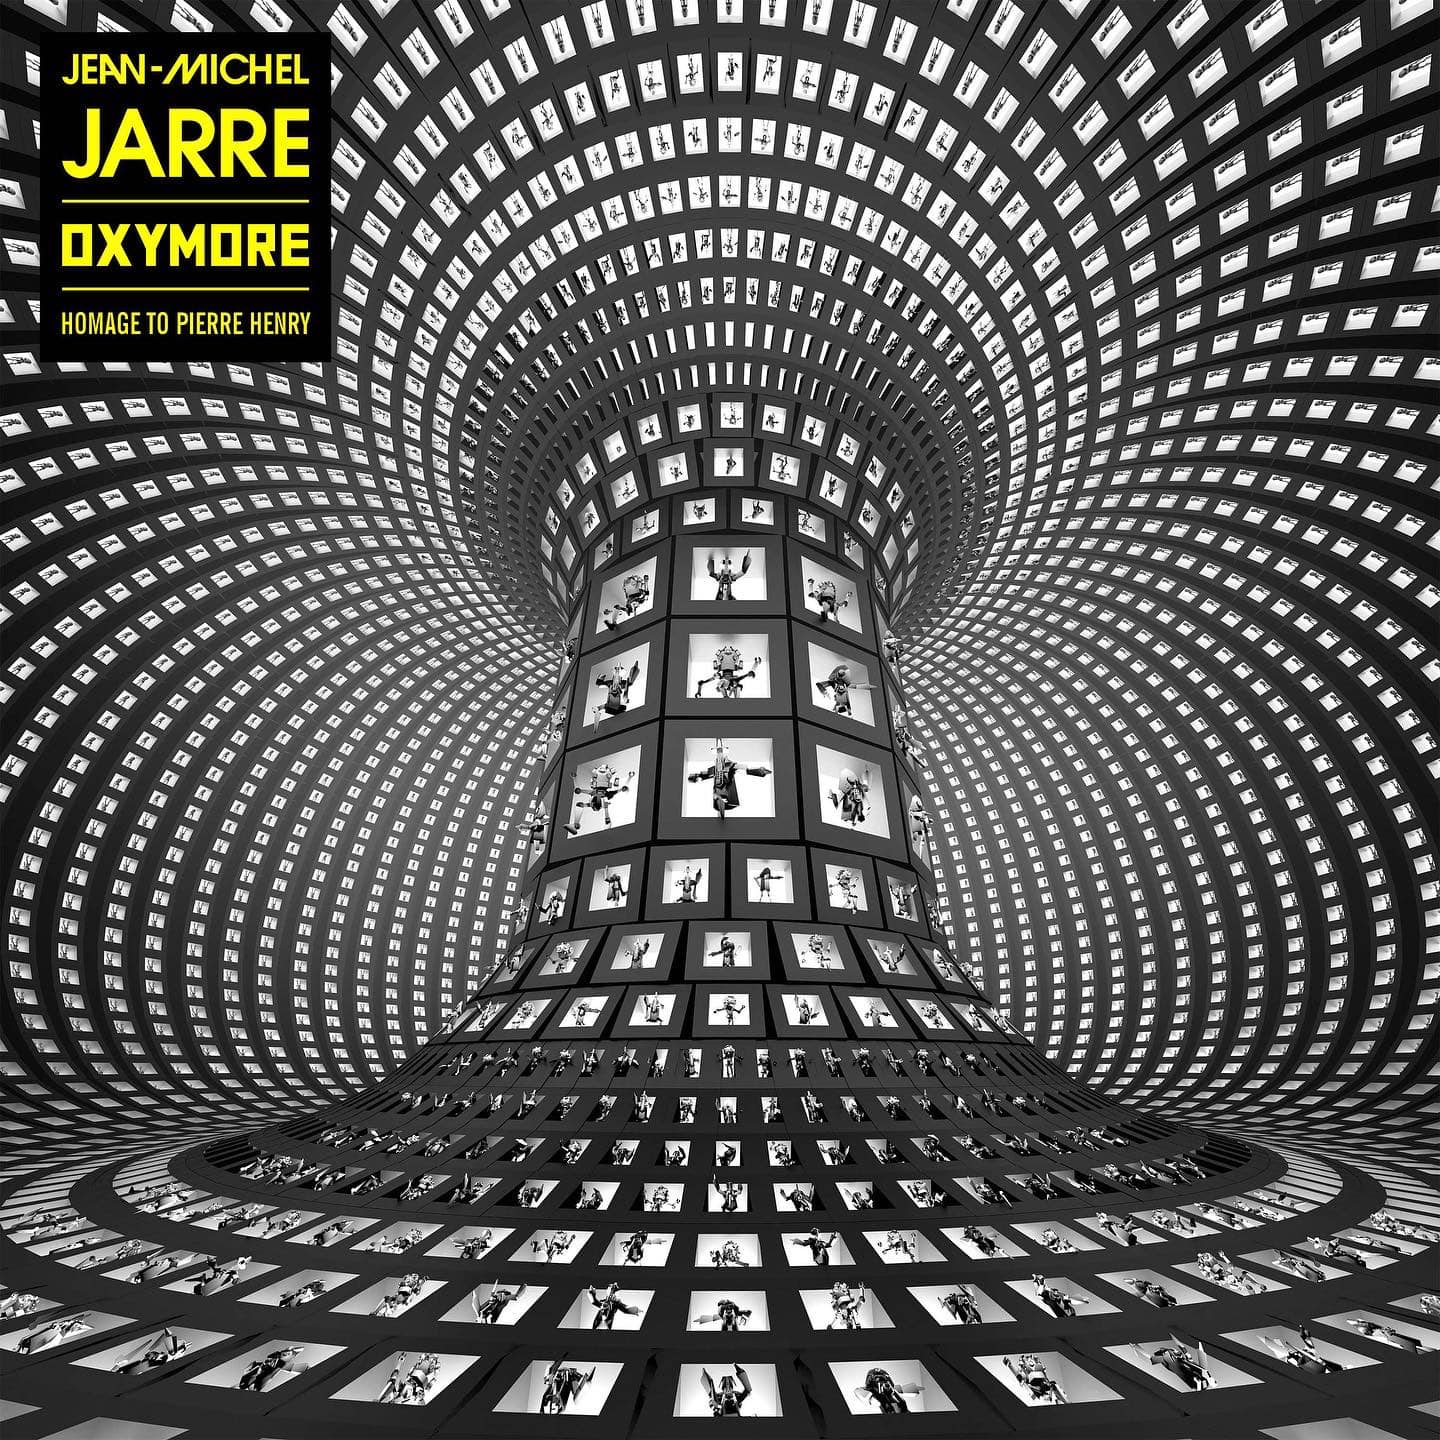 Jean-Michel Jarre OXYMORE